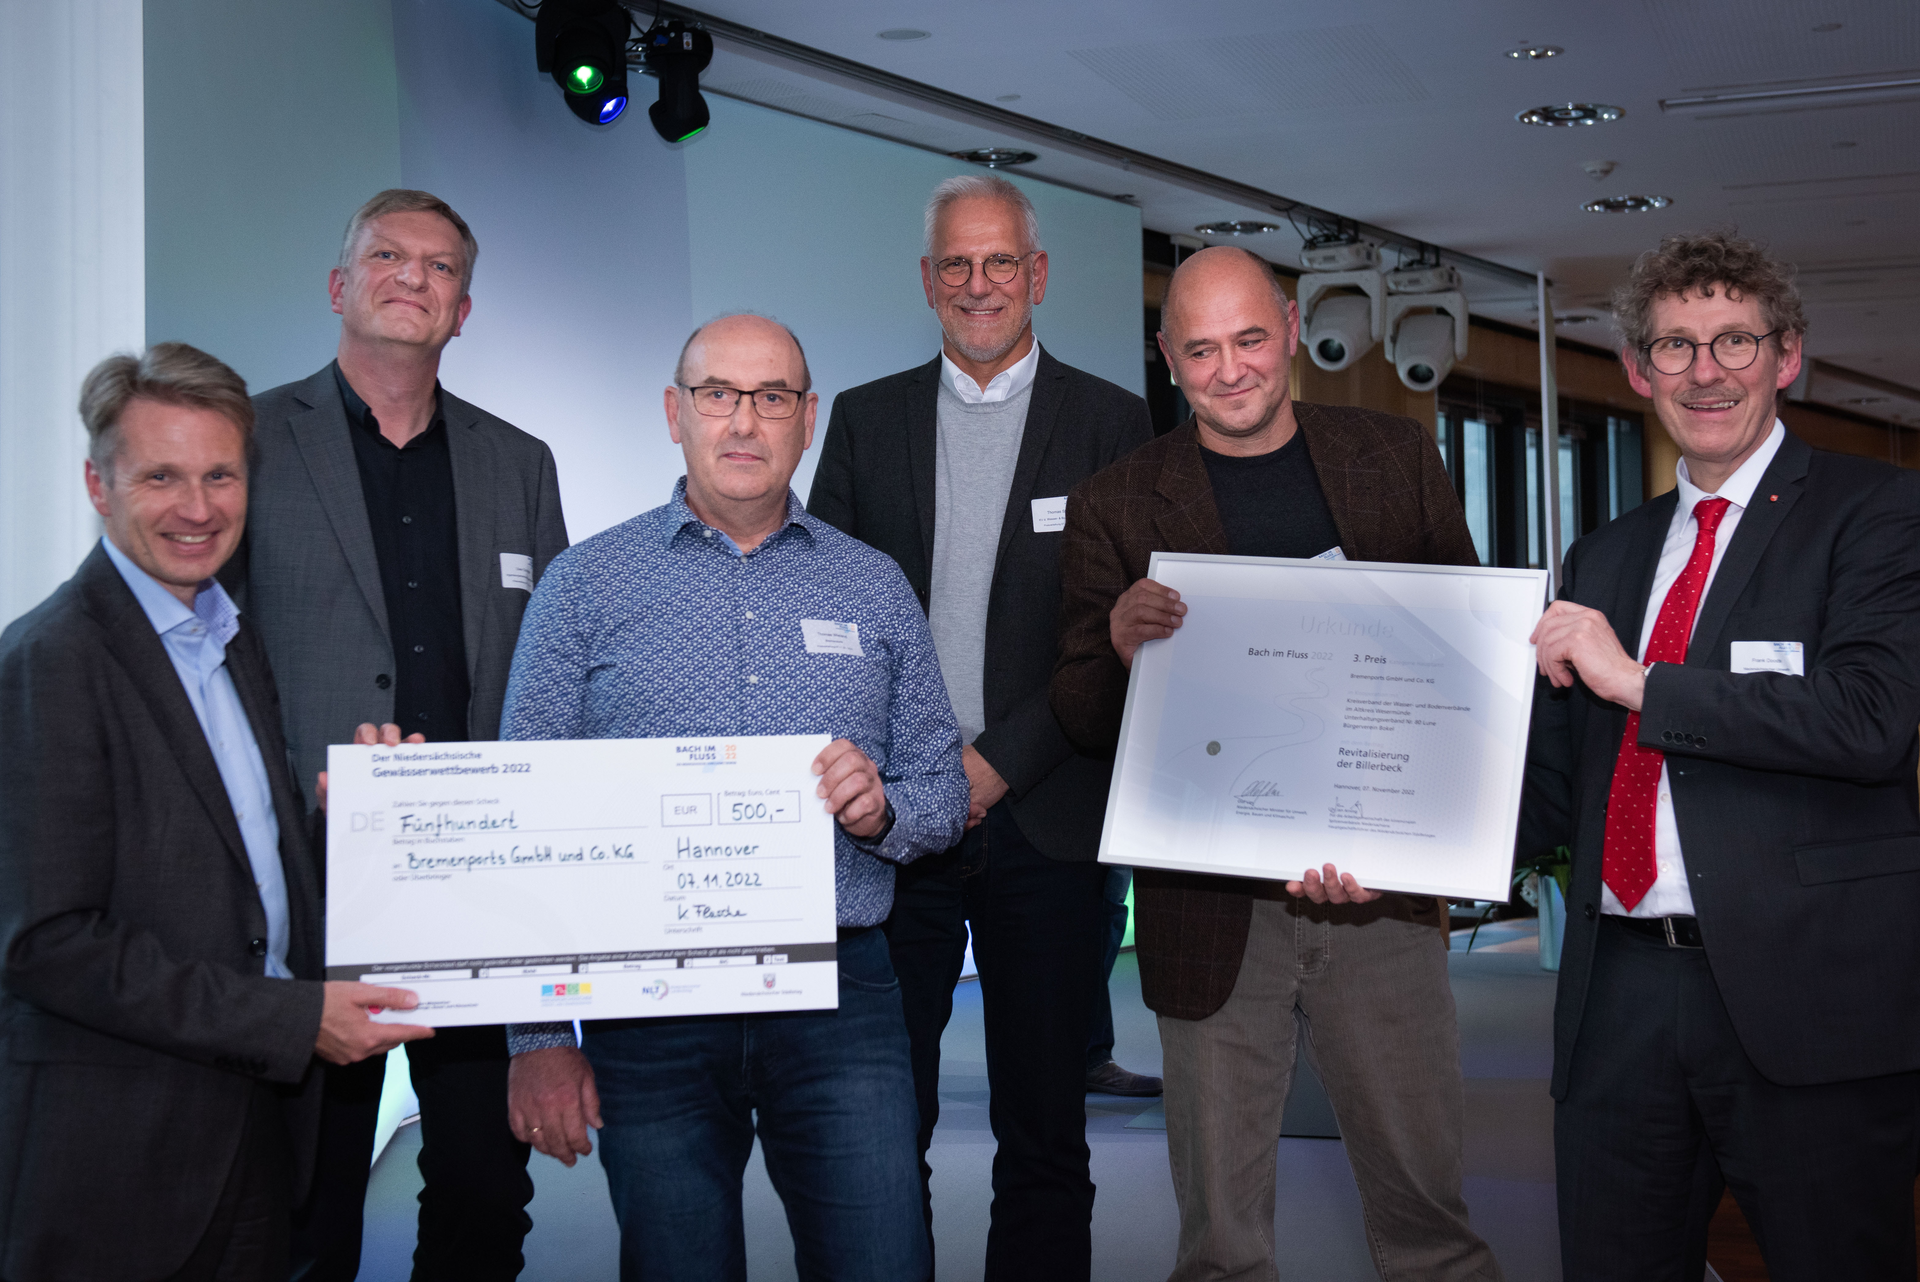 Teilnehmer der Scheckübergabe nebeneinander: Vorne, vlnr.: Dr. Jan. Arning, Thomas Wieland, Ulrich Kraus, Frank Doods